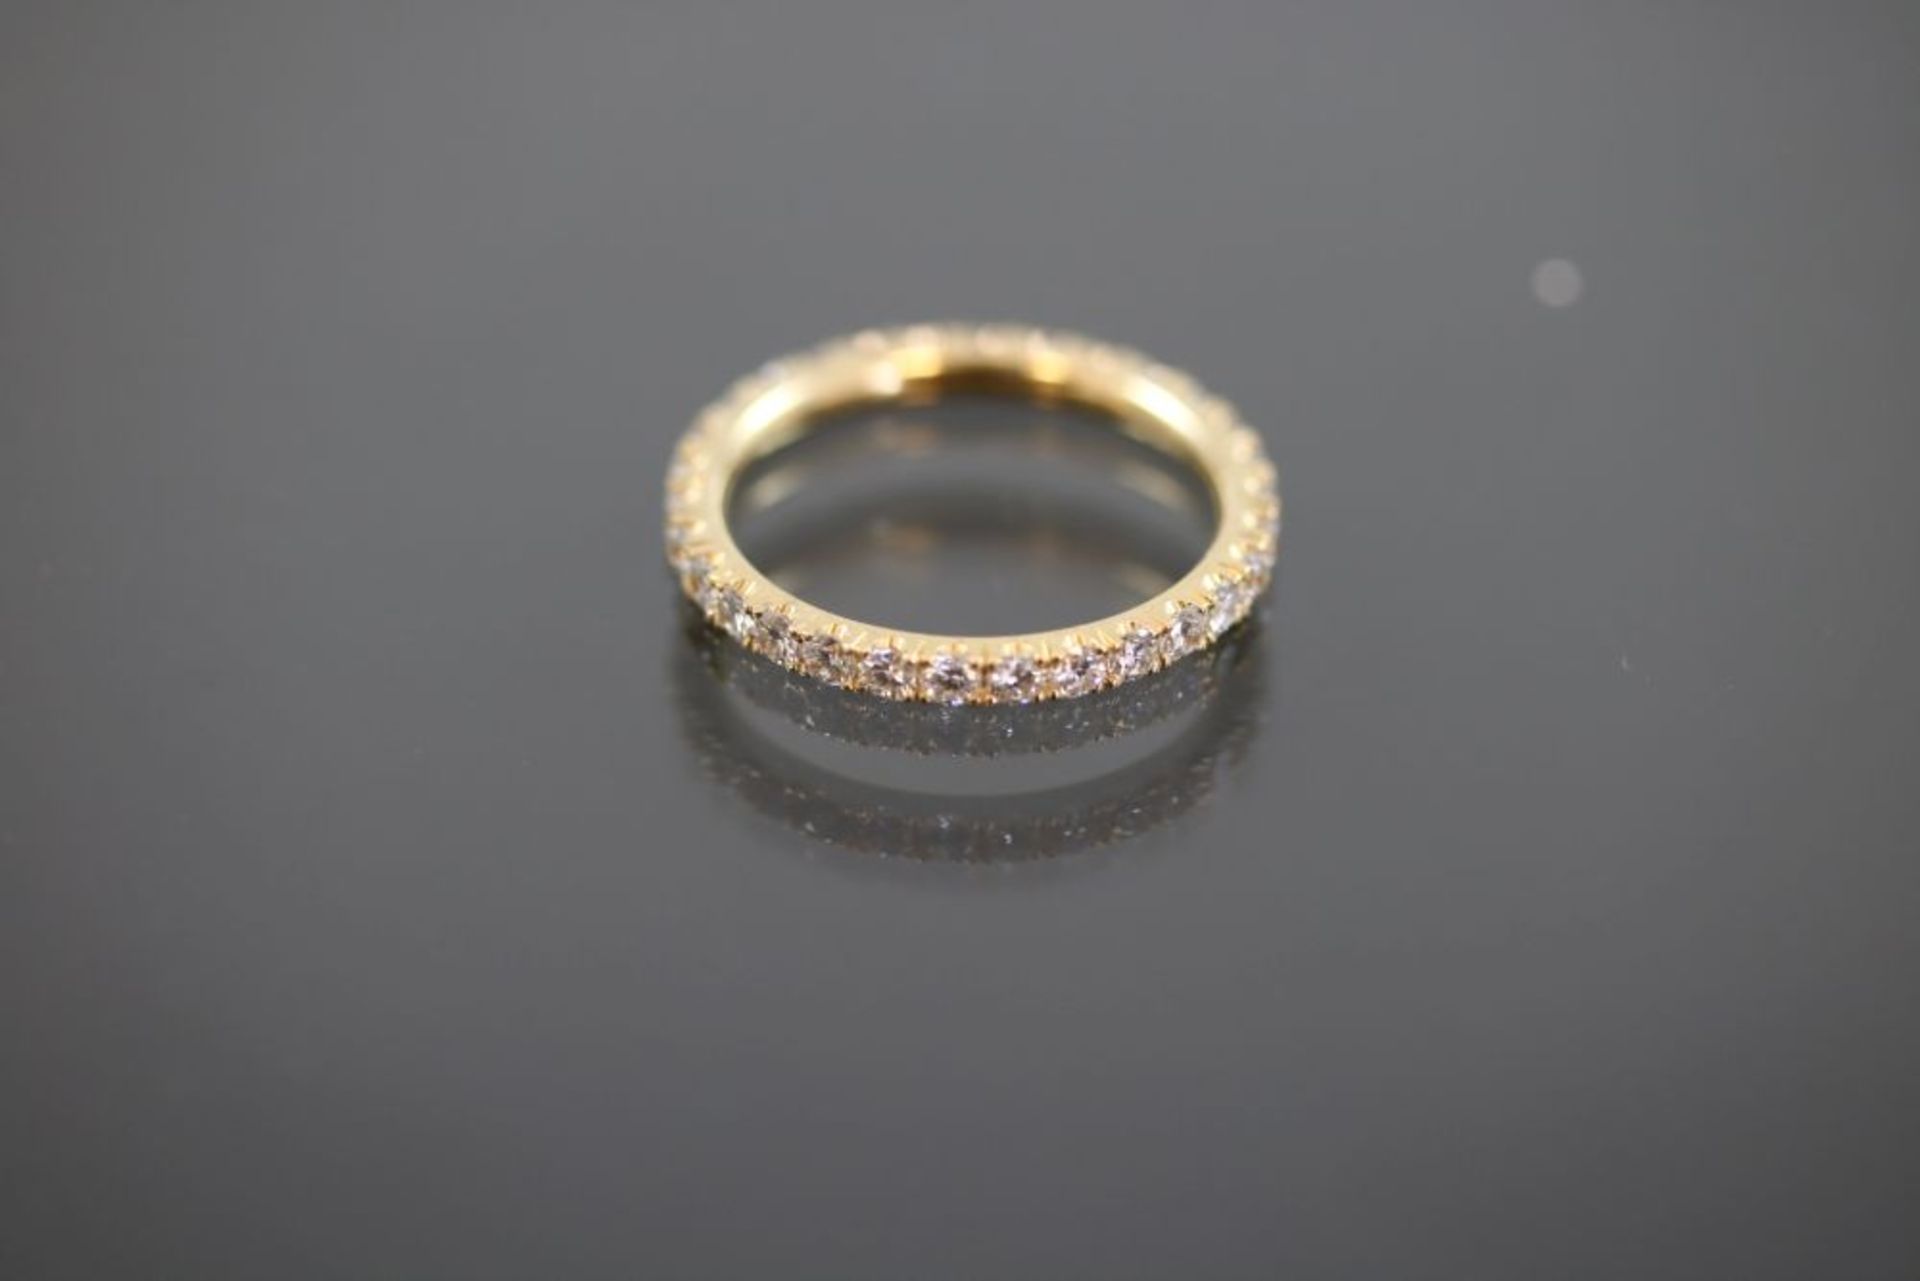 Brillant-Ring, 750 Gelbgold2,2 Gramm 30 Brillanten, 1,05 ct., w/si. Ringgröße: 53Schätzpreis: 3000,-